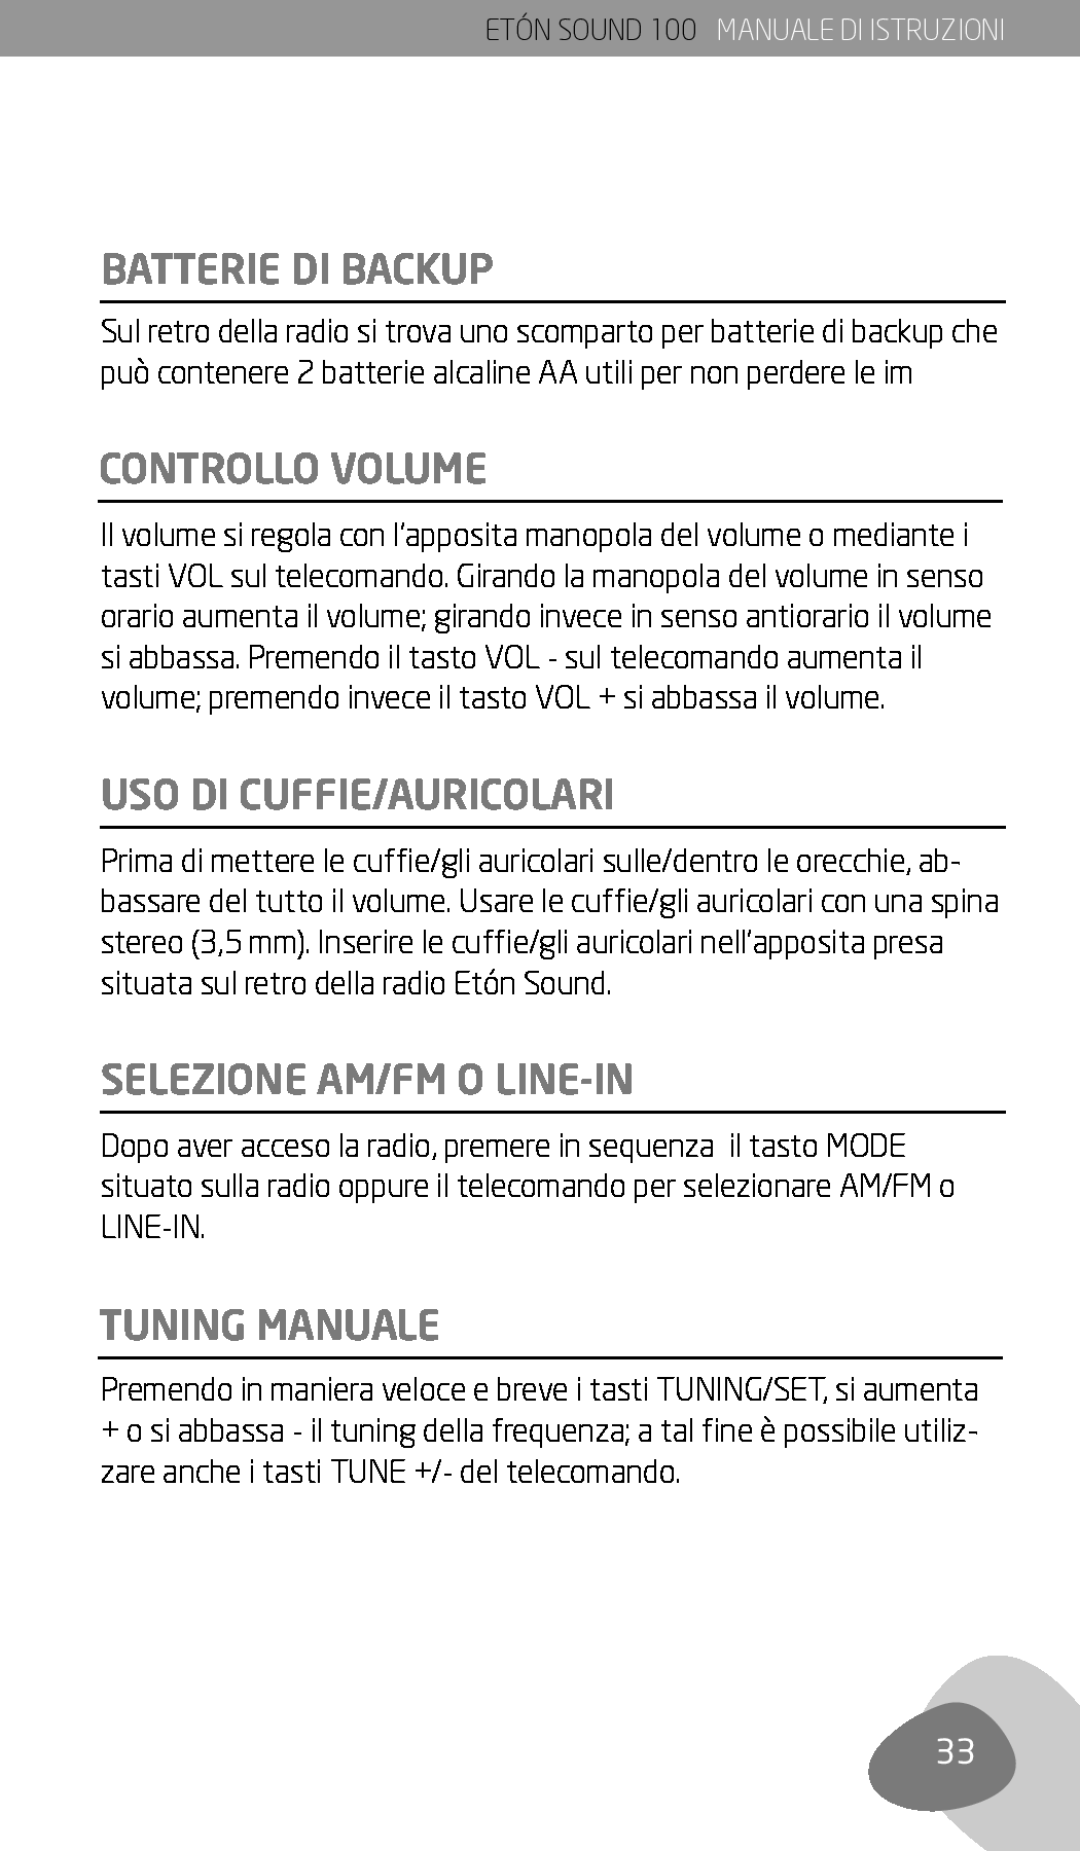 Eton Sound 100 Batterie Di Backup, Controllo Volume, Uso Di Cuffie/Auricolari, Selezione Am/Fm O Line-In, Tuning Manuale 